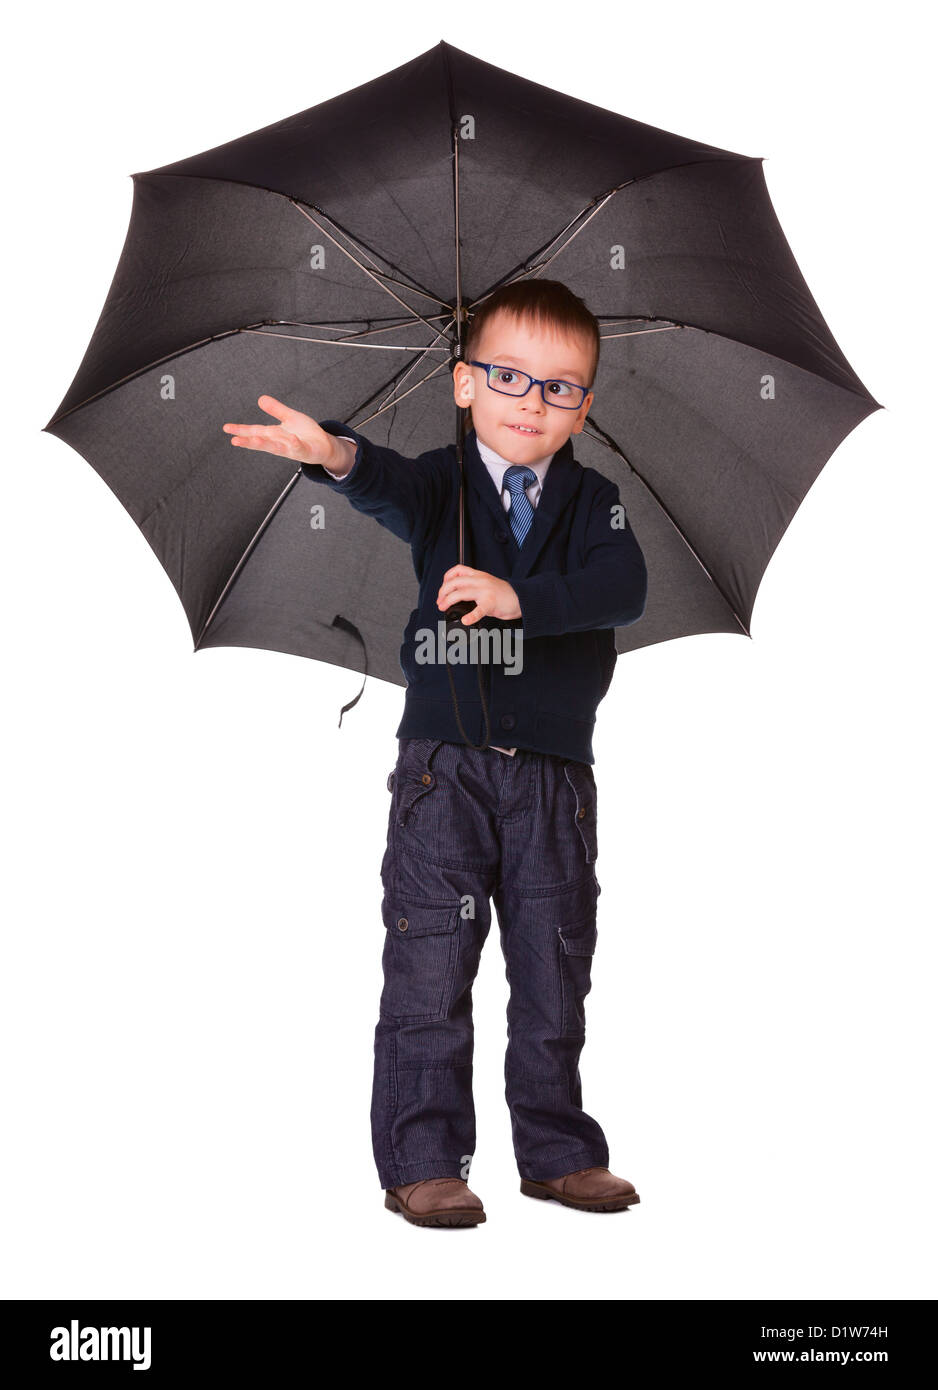 Junge in schwarzer Kleidung unter großen schwarzen Regenschirm überprüfen, es regnet oder nicht. Isoliert auf weiss Stockfoto